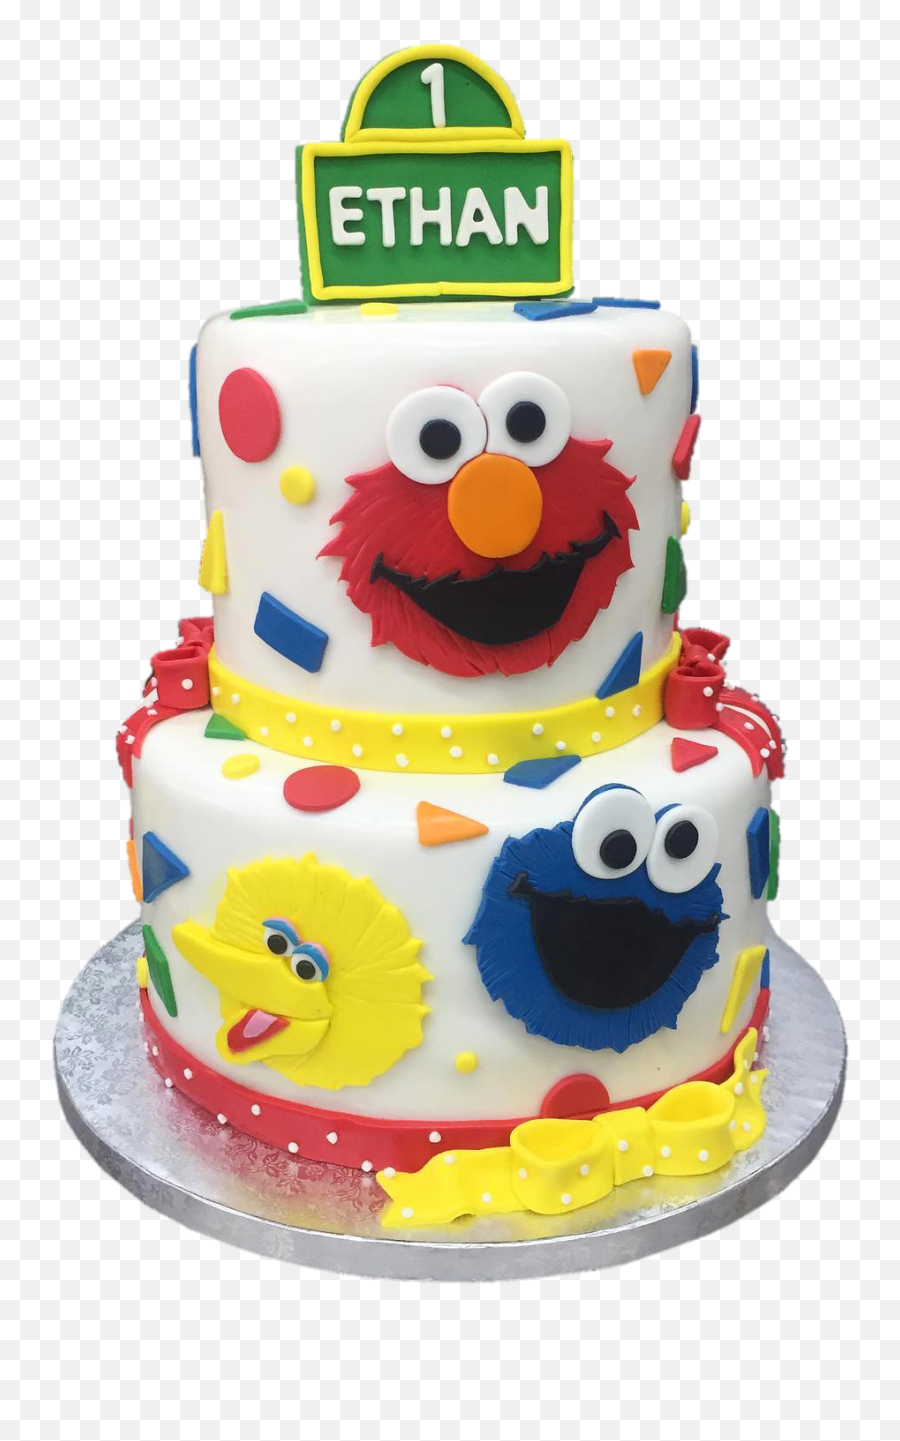 Products - Sweet Bites Ltd Cake Decorating Supply Emoji,Candyland Emoji Themed Cake Ideas